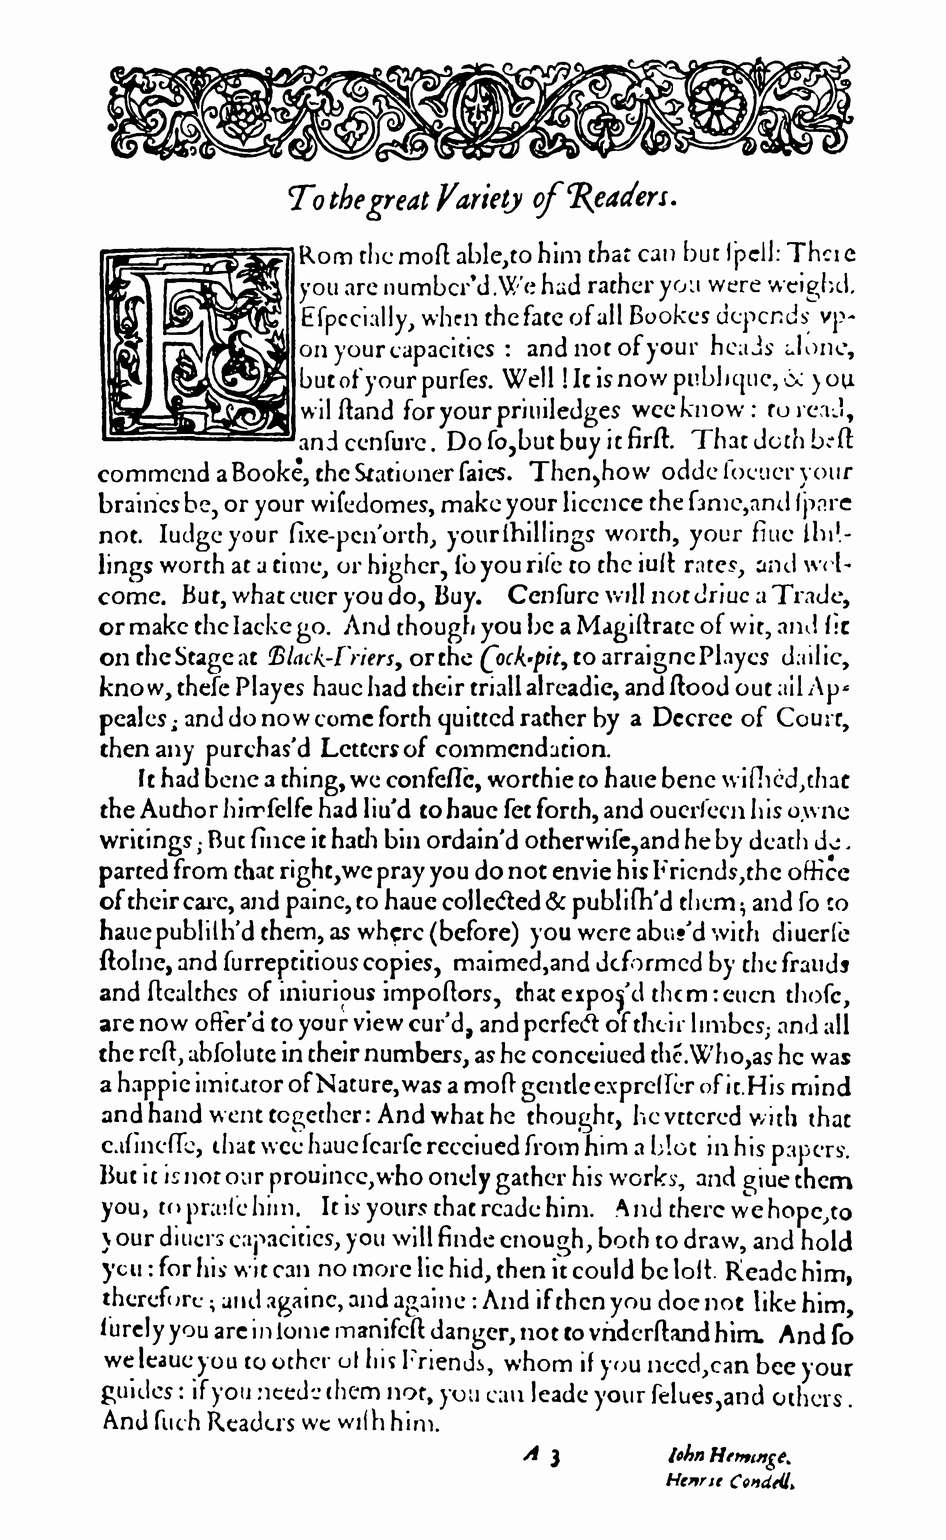 Обращение редакторов фолио 1623 г. Джона Хеминга и Генри Кондела к читателям